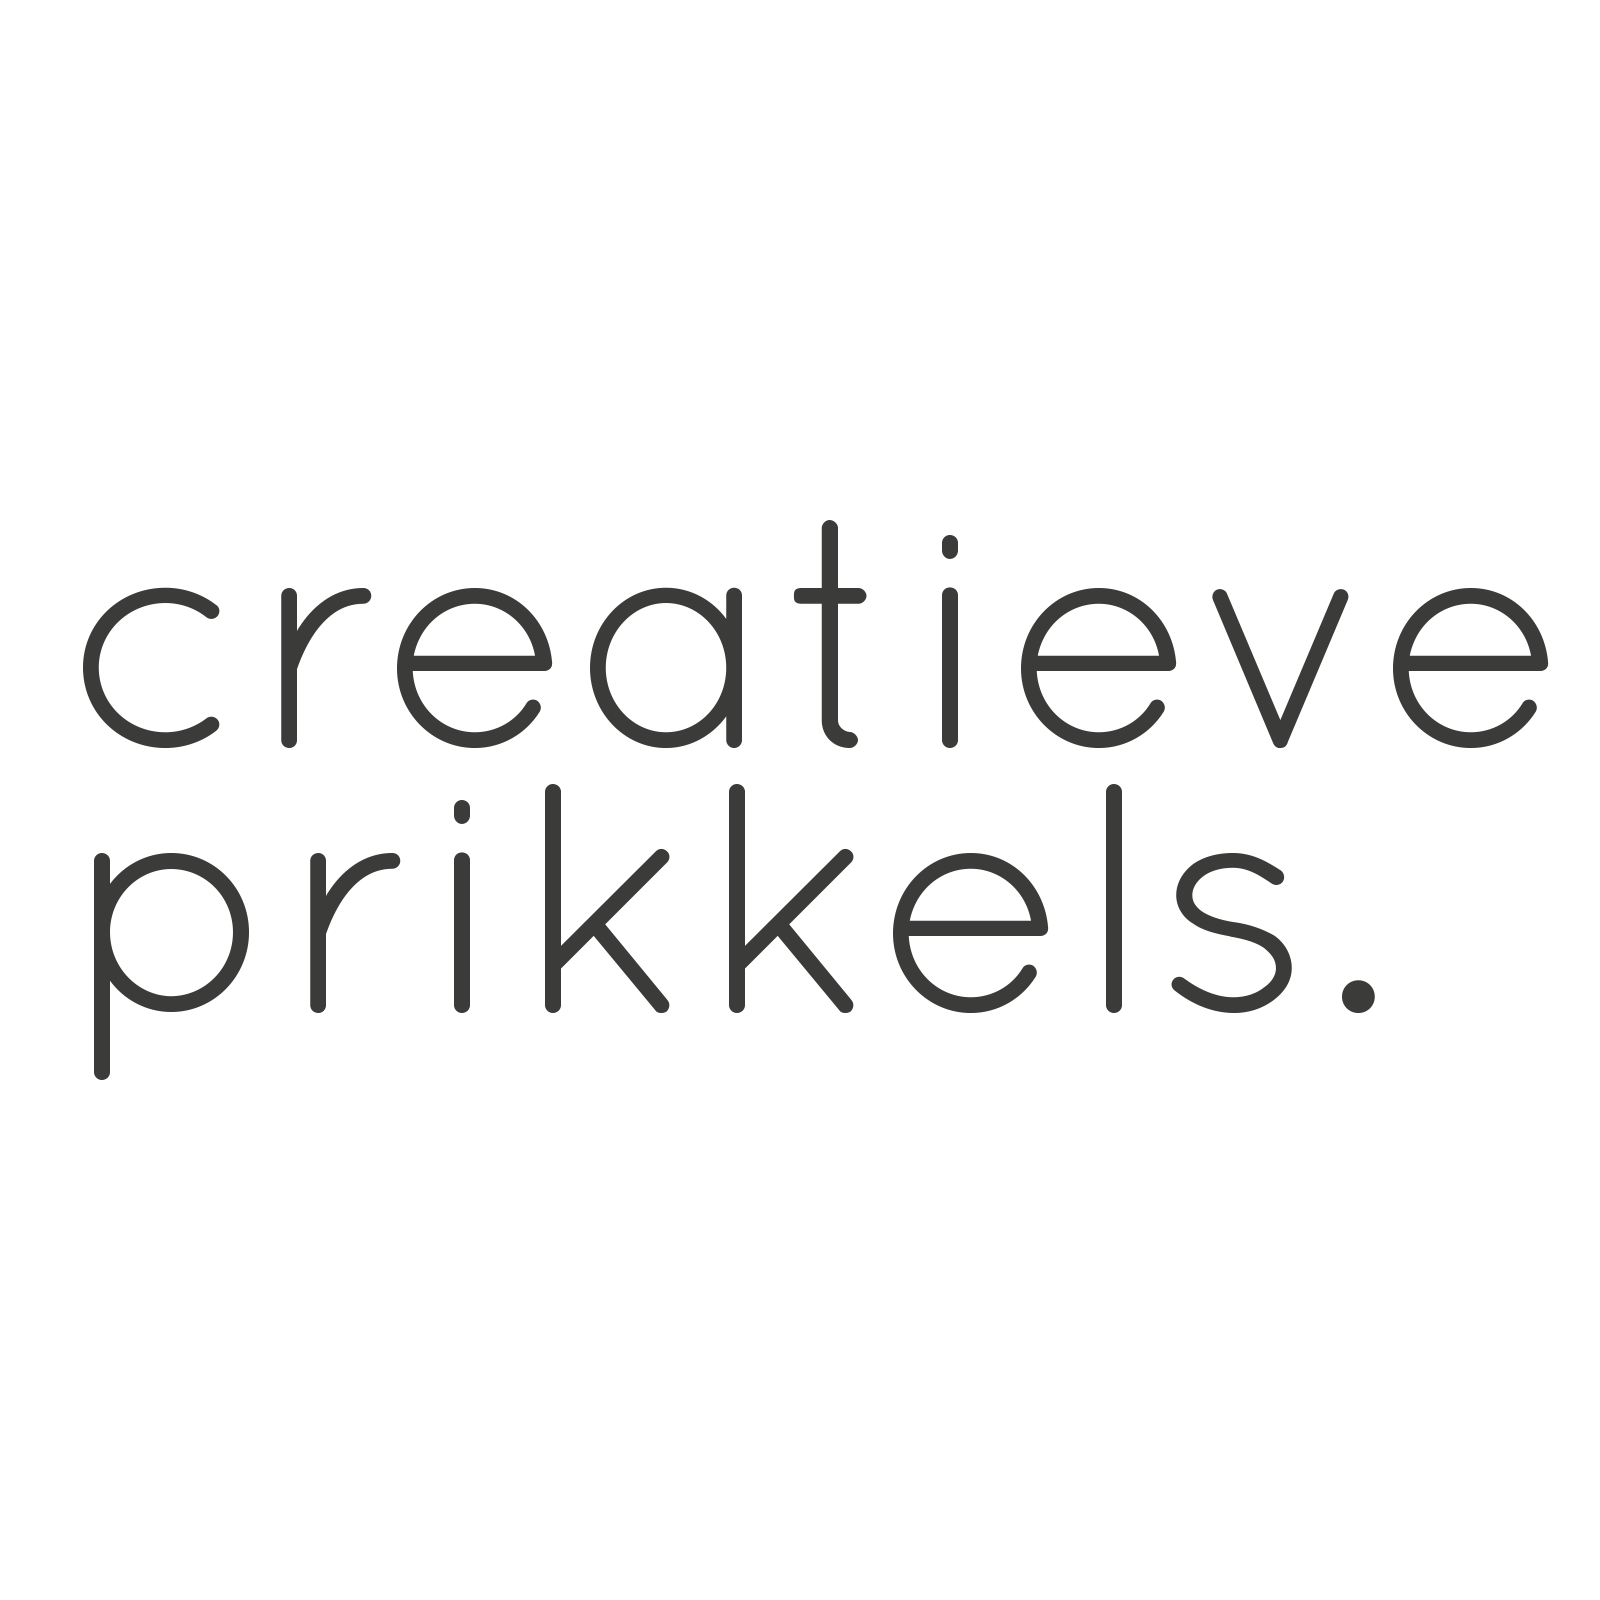 Creatieve Prikkels